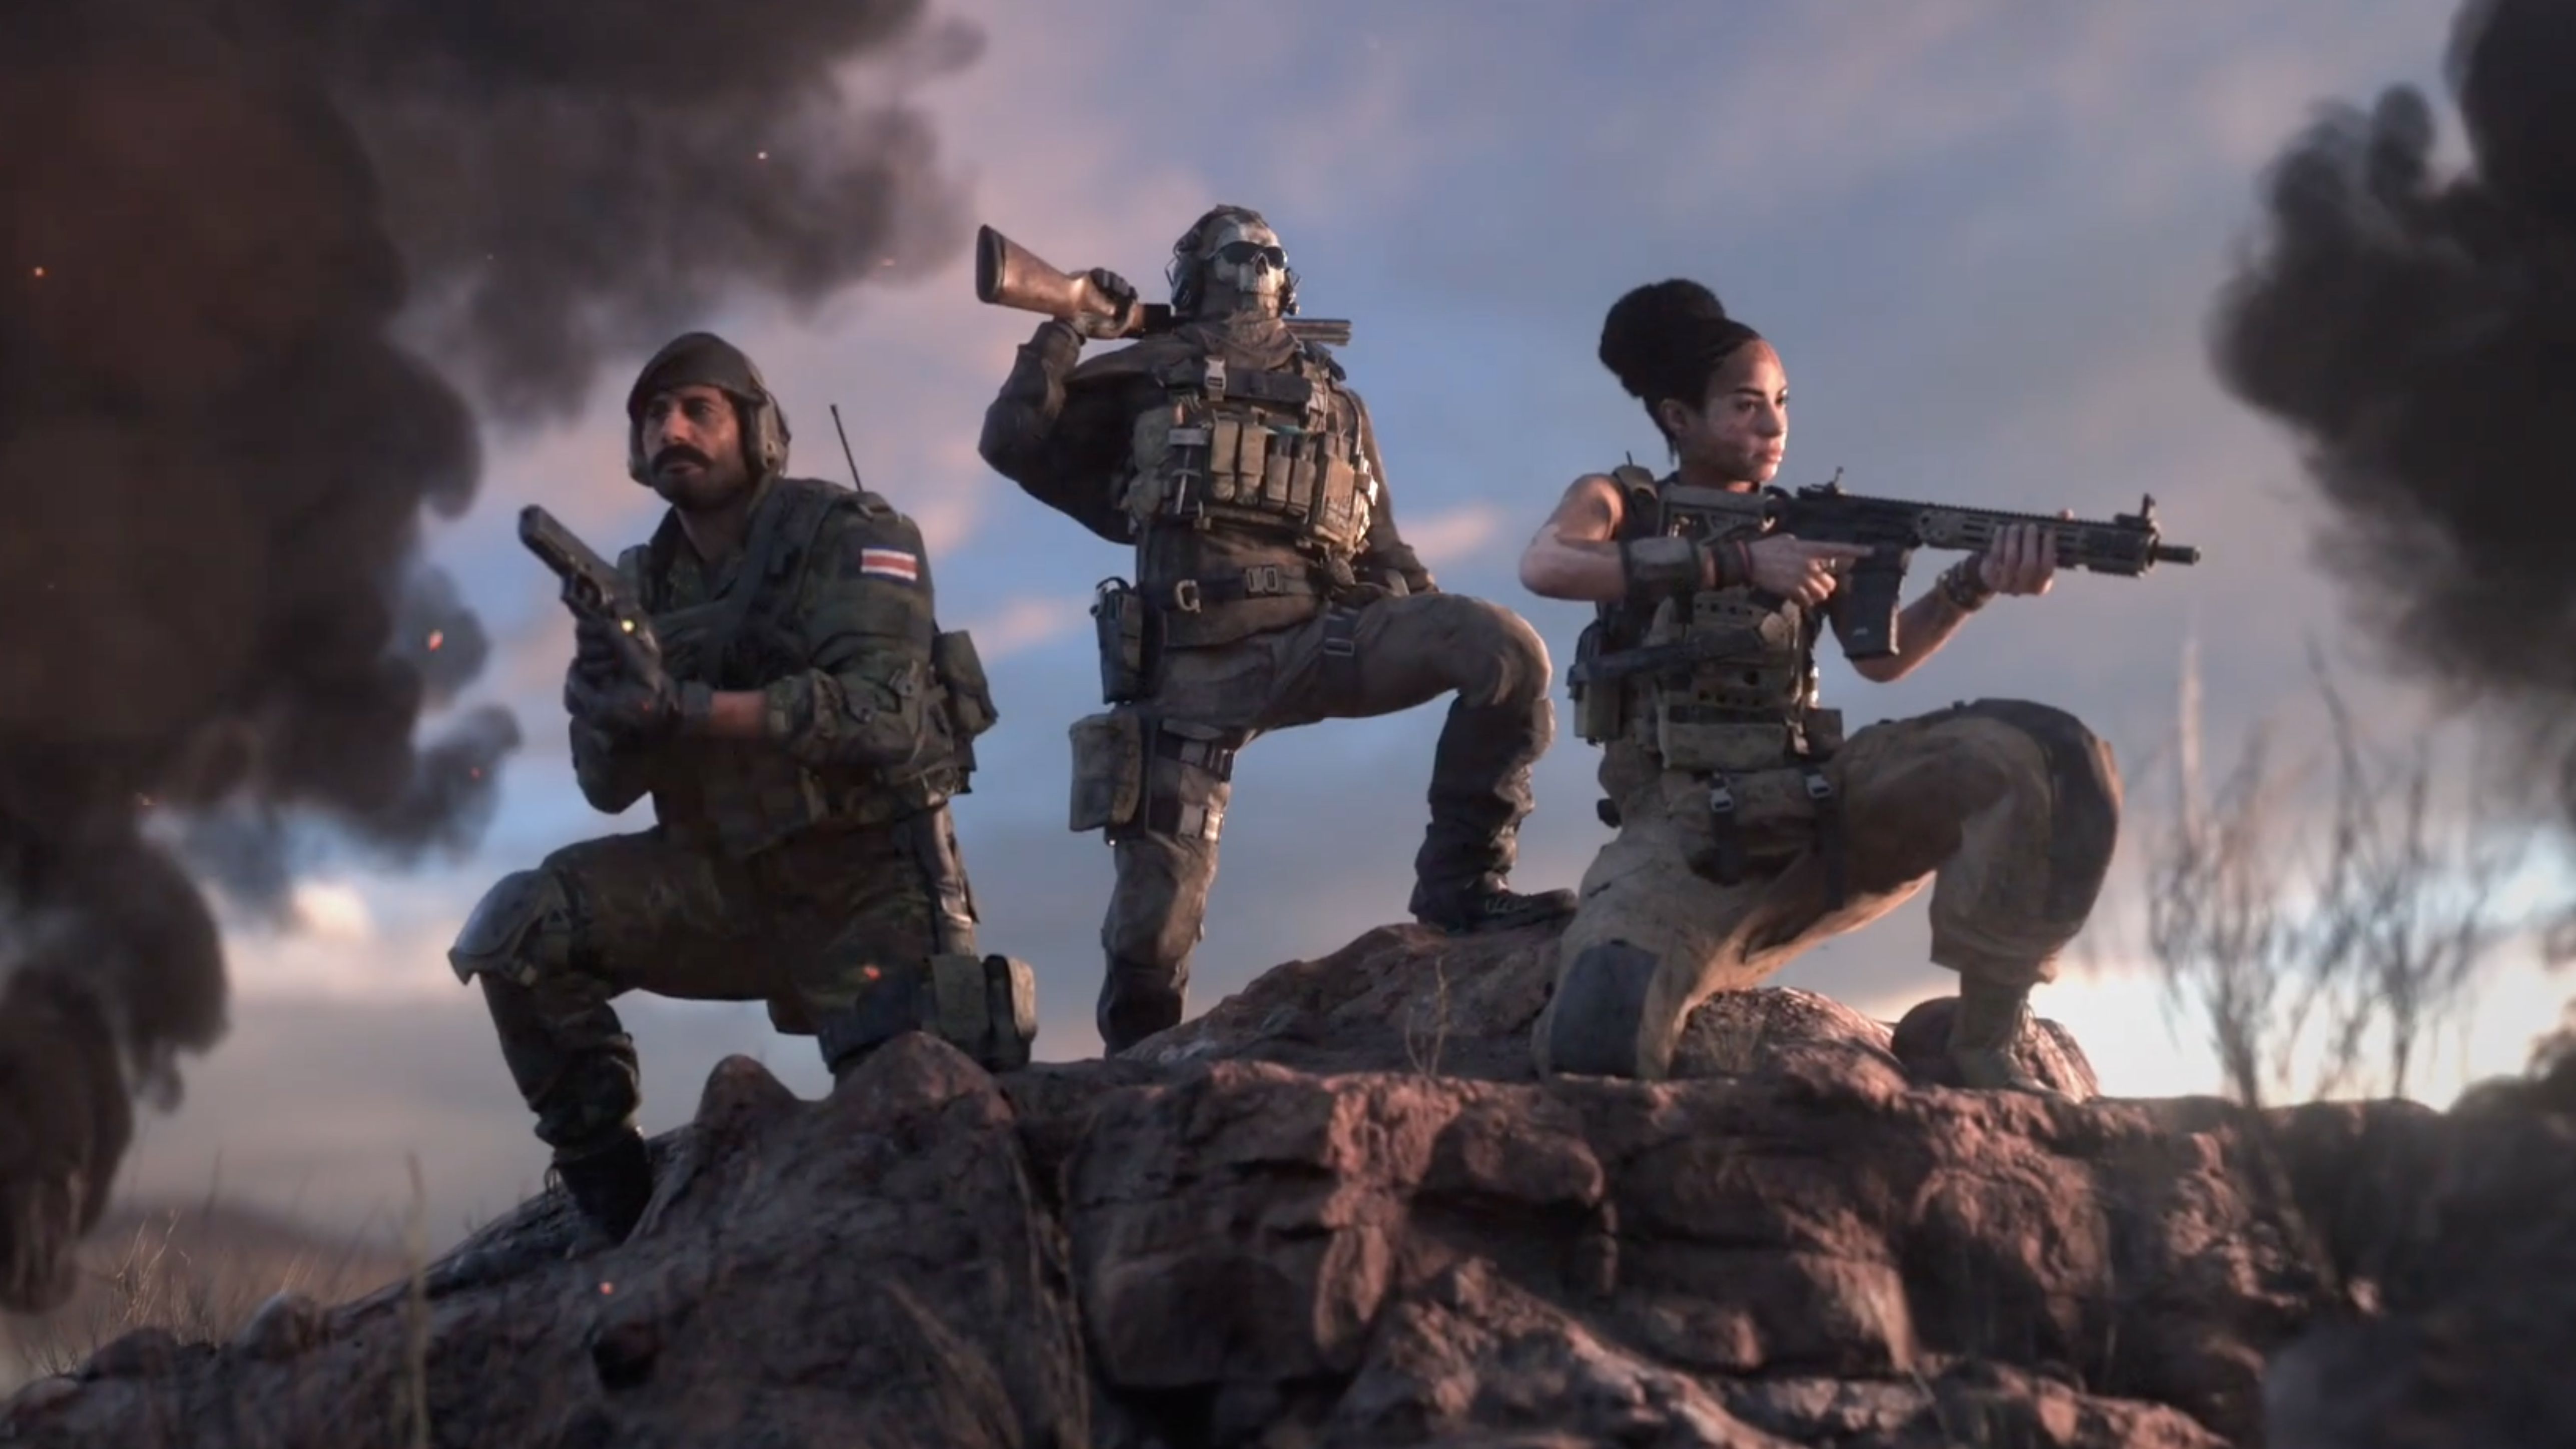 Call of Duty: Warzone 2.0 ganha requisitos para rodar no PC; confira